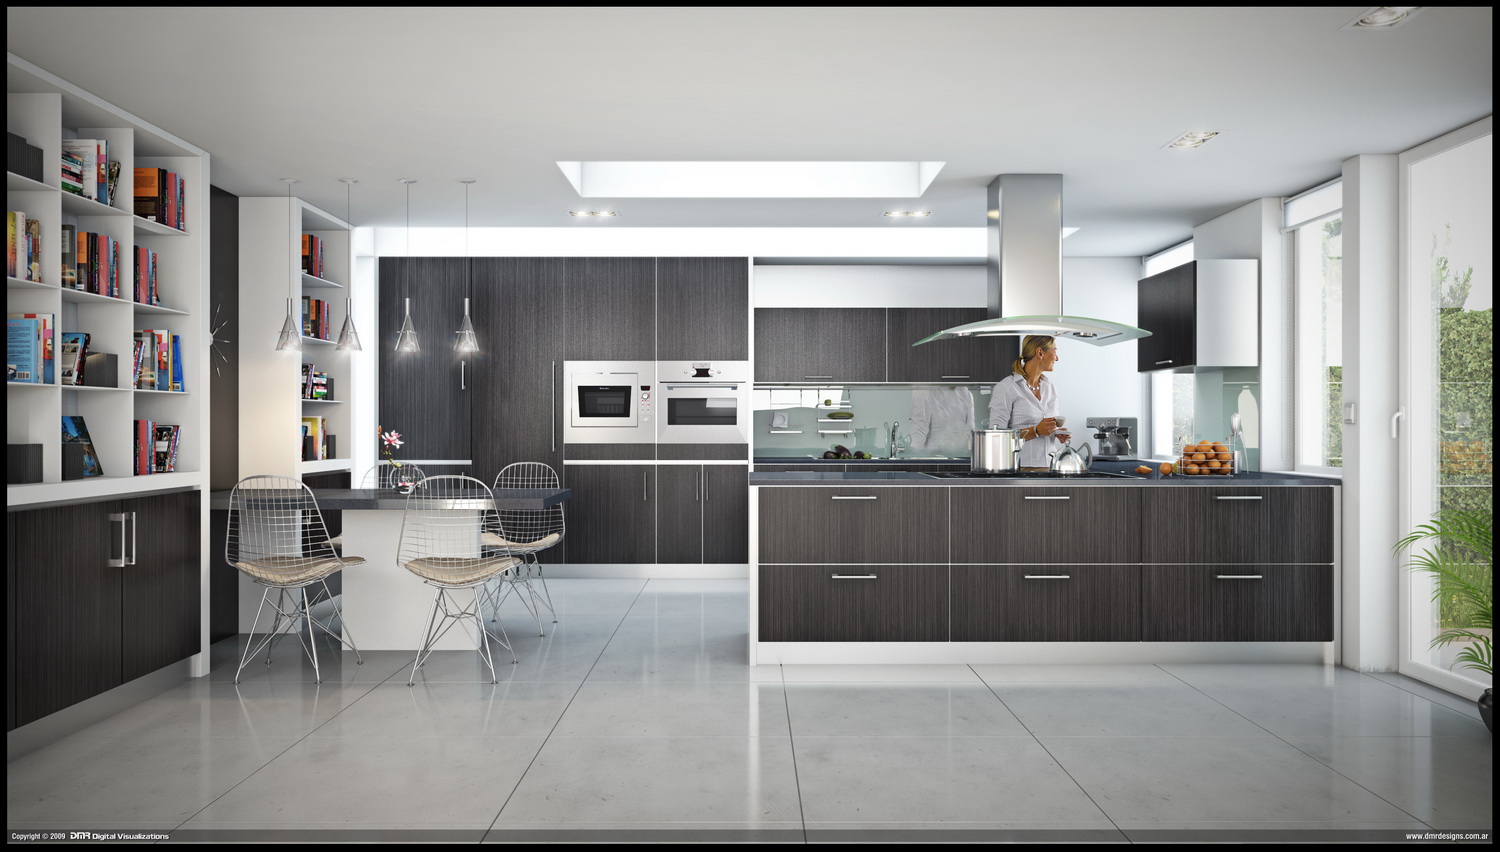 Home Architec Ideas Kitchen Design Contemporary